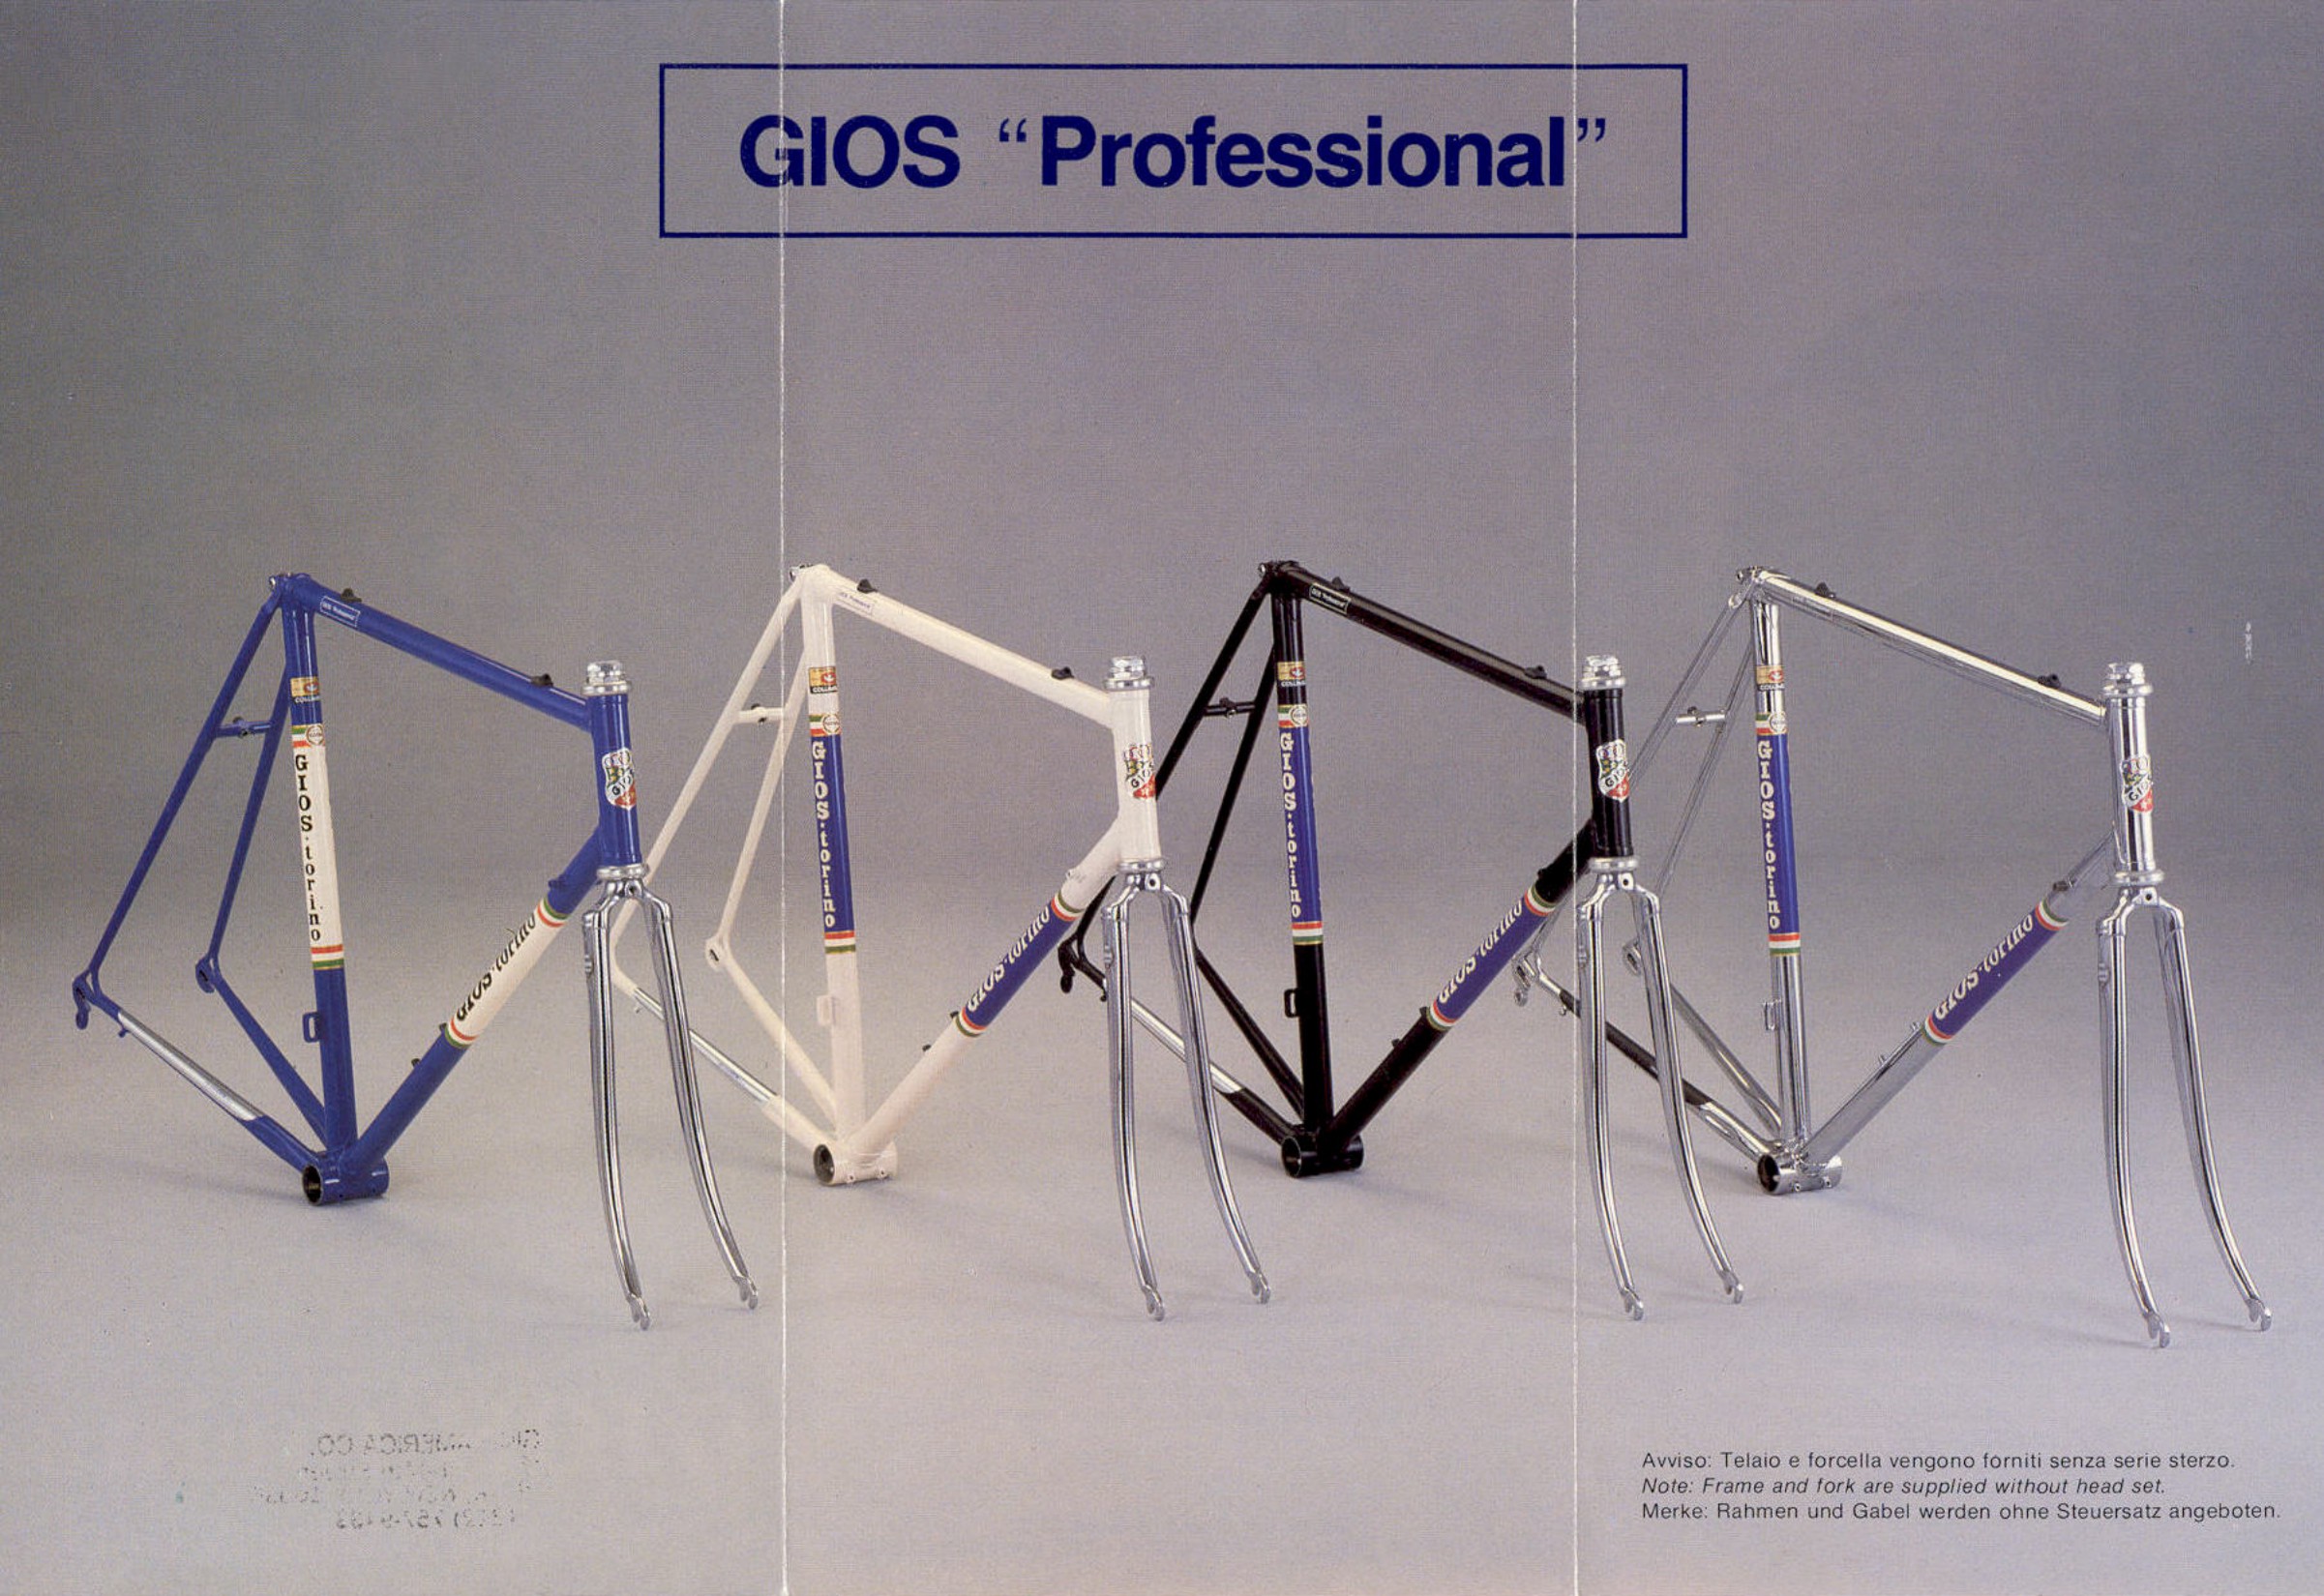 Gios brochure (1986)